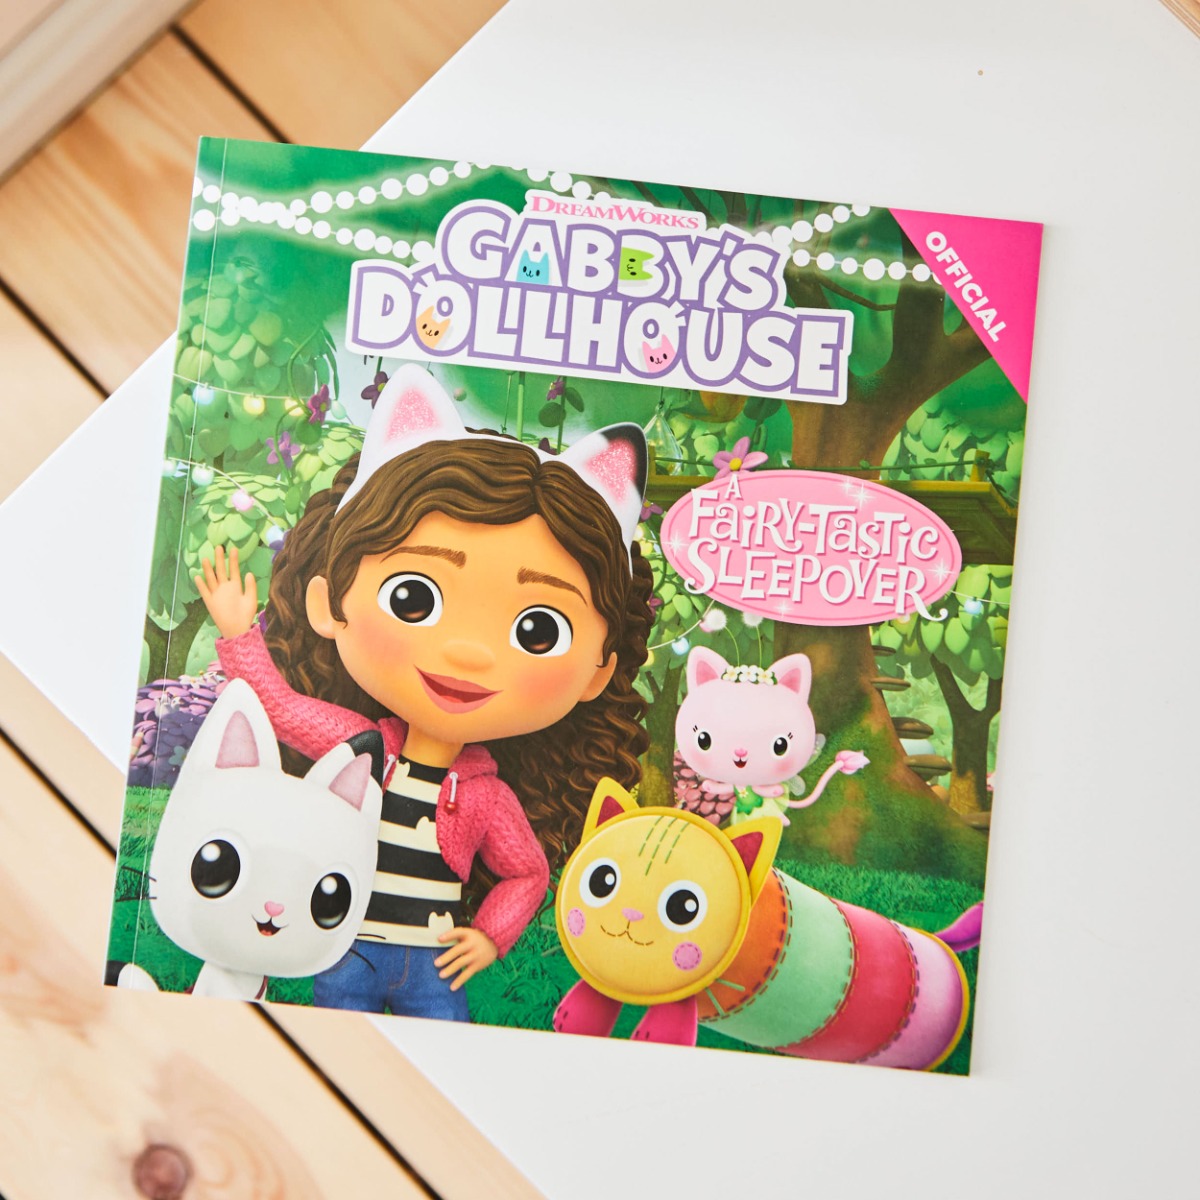 Gabby’s Dollhouse: A Fairy-Tastic Sleepover Paperback